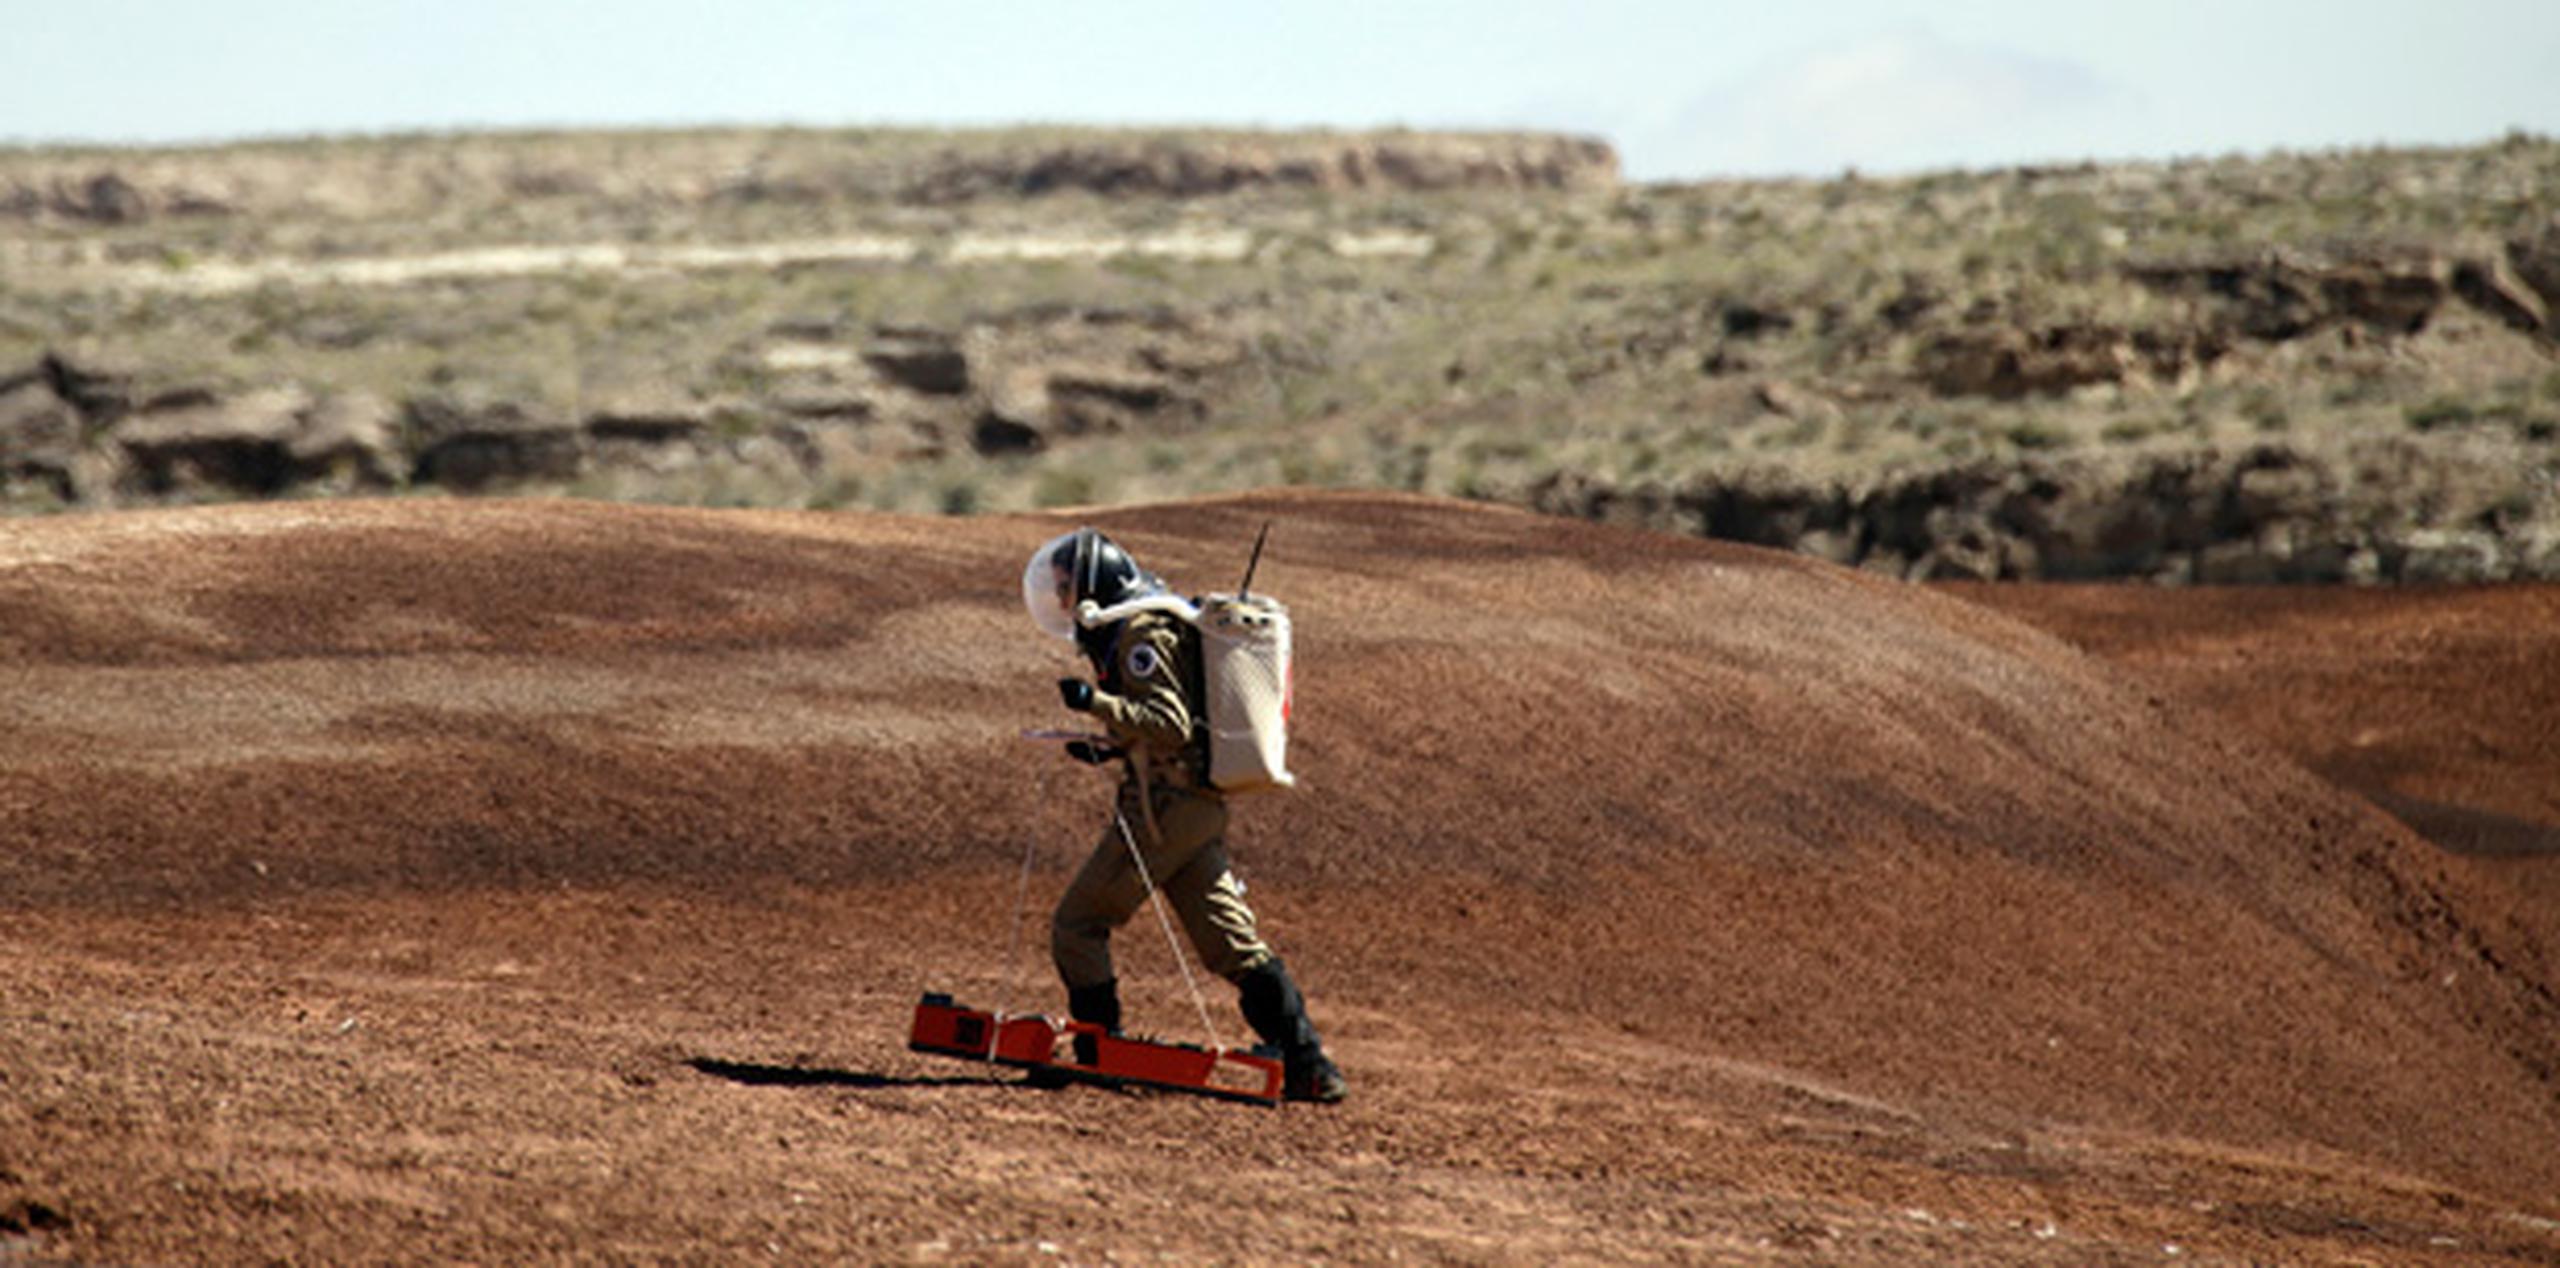 Este rocoso rincón de Utah se parece tanto a la superficie del planeta rojo que se ha convertido en un imán para científicos e ingenieros para organizar expediciones imaginarias a Marte. (AP)